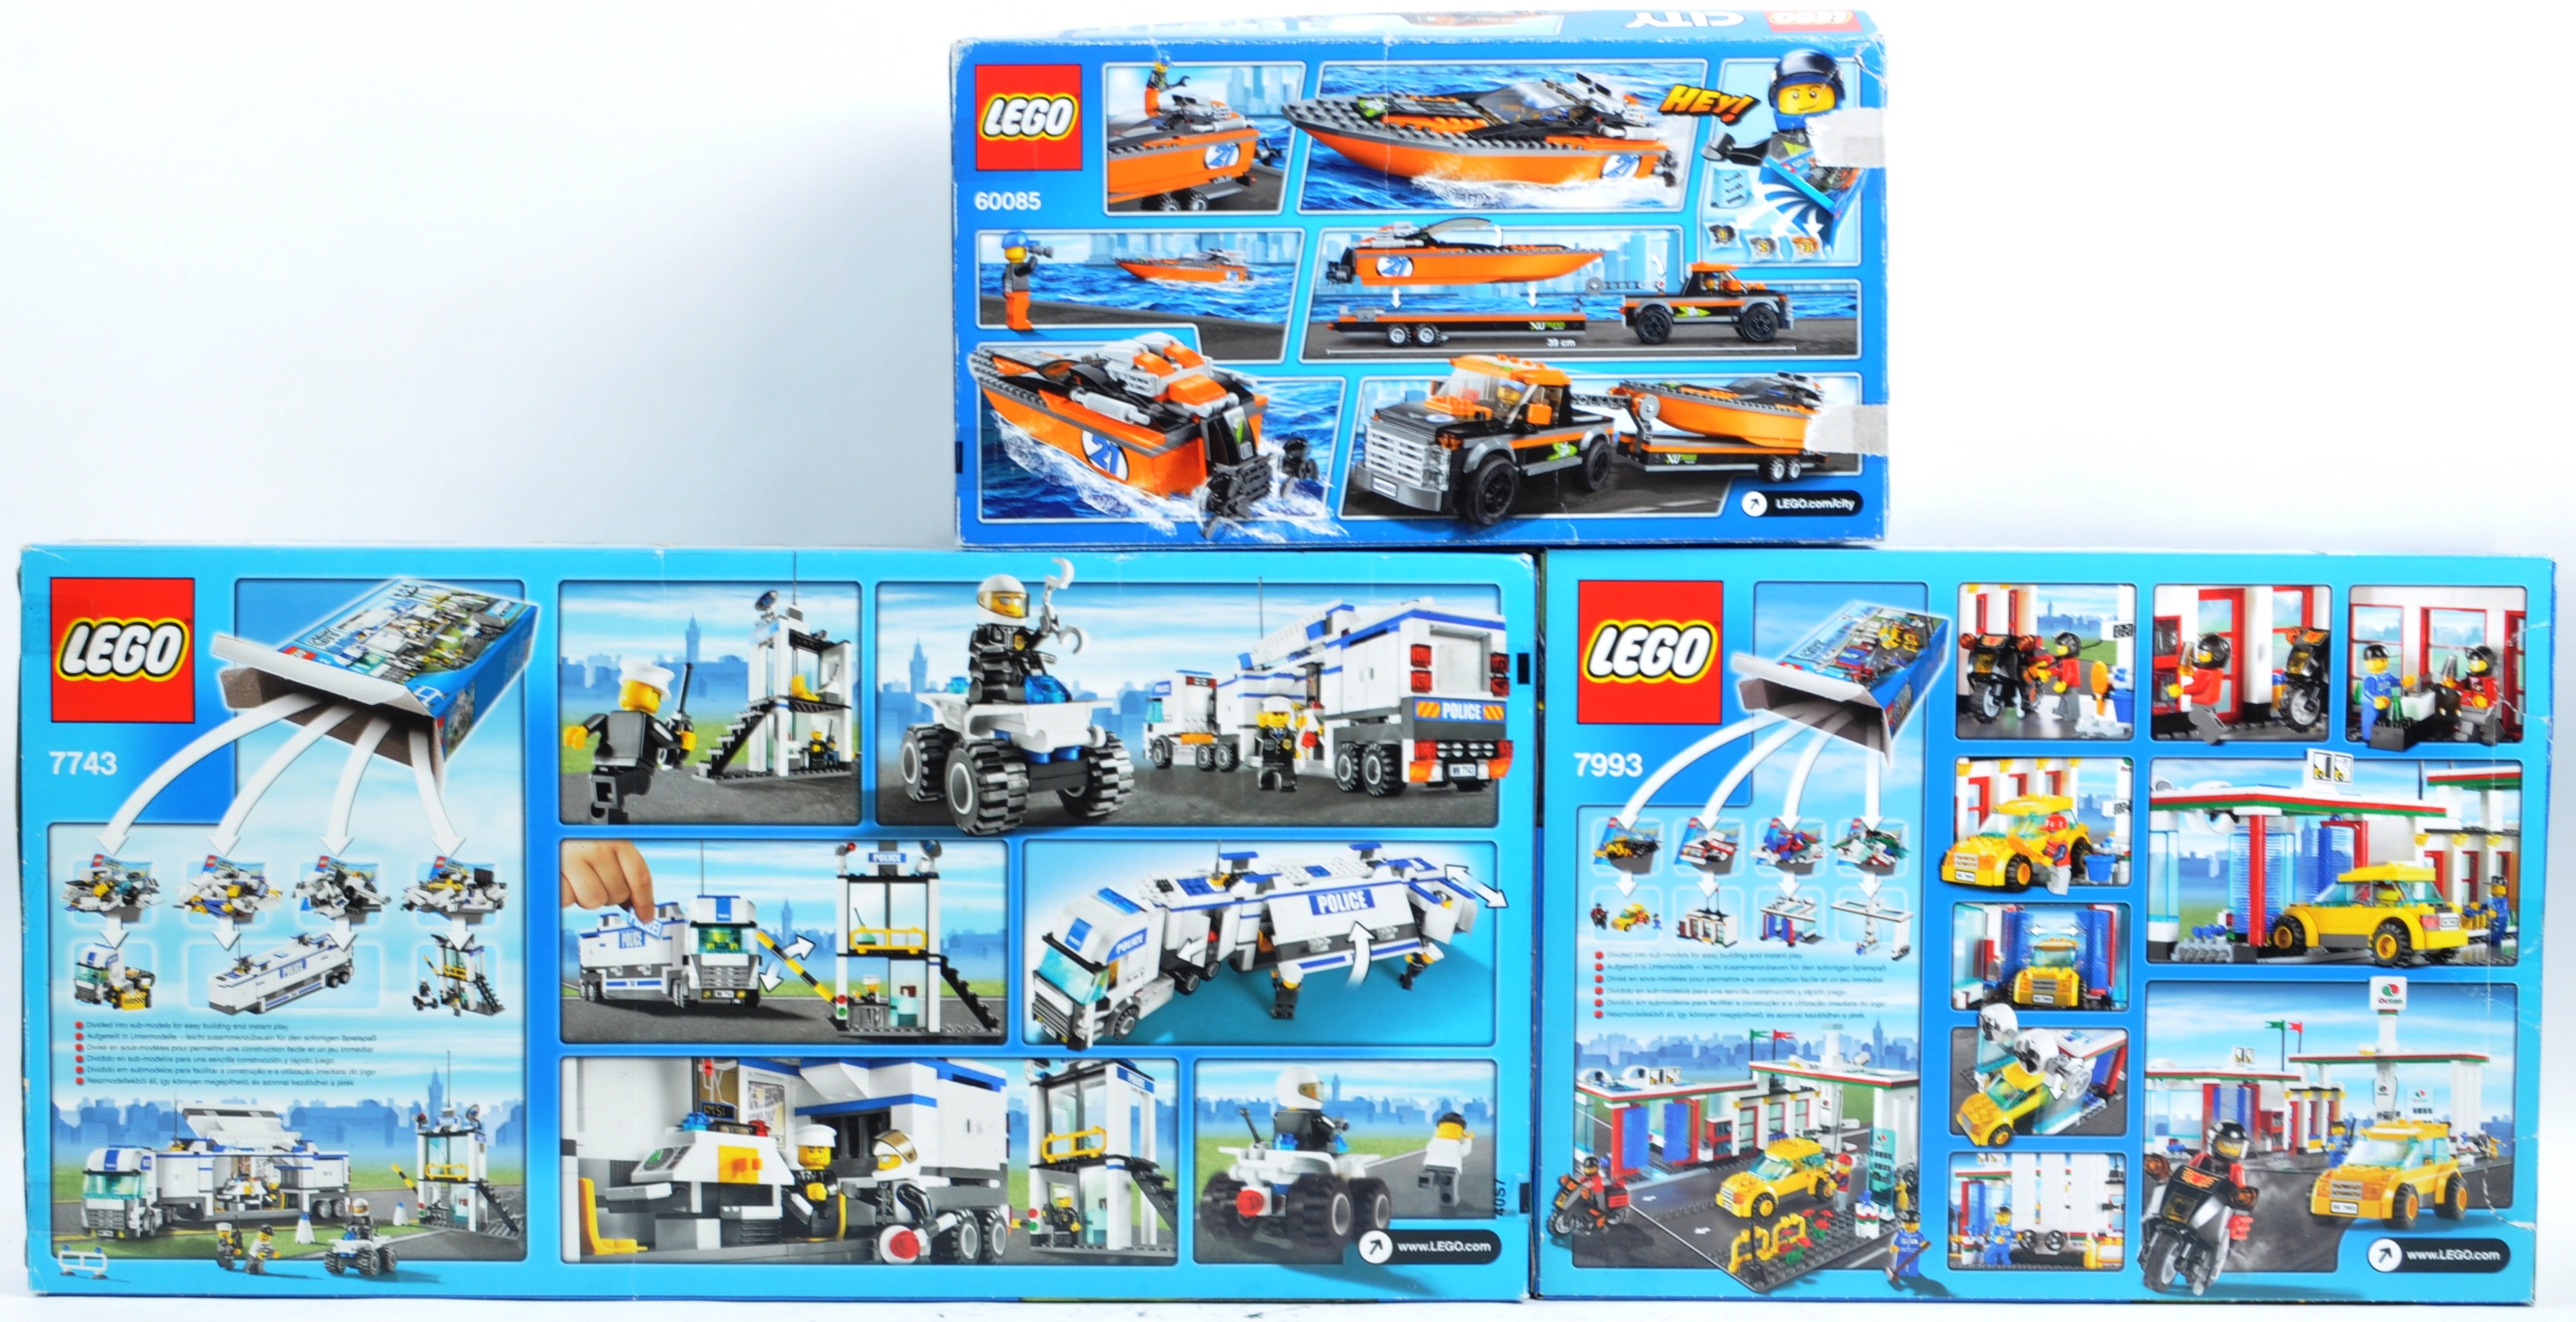 LEGO SETS - LEGO CITY - 7743 / 7993 / 60085 - Image 5 of 6